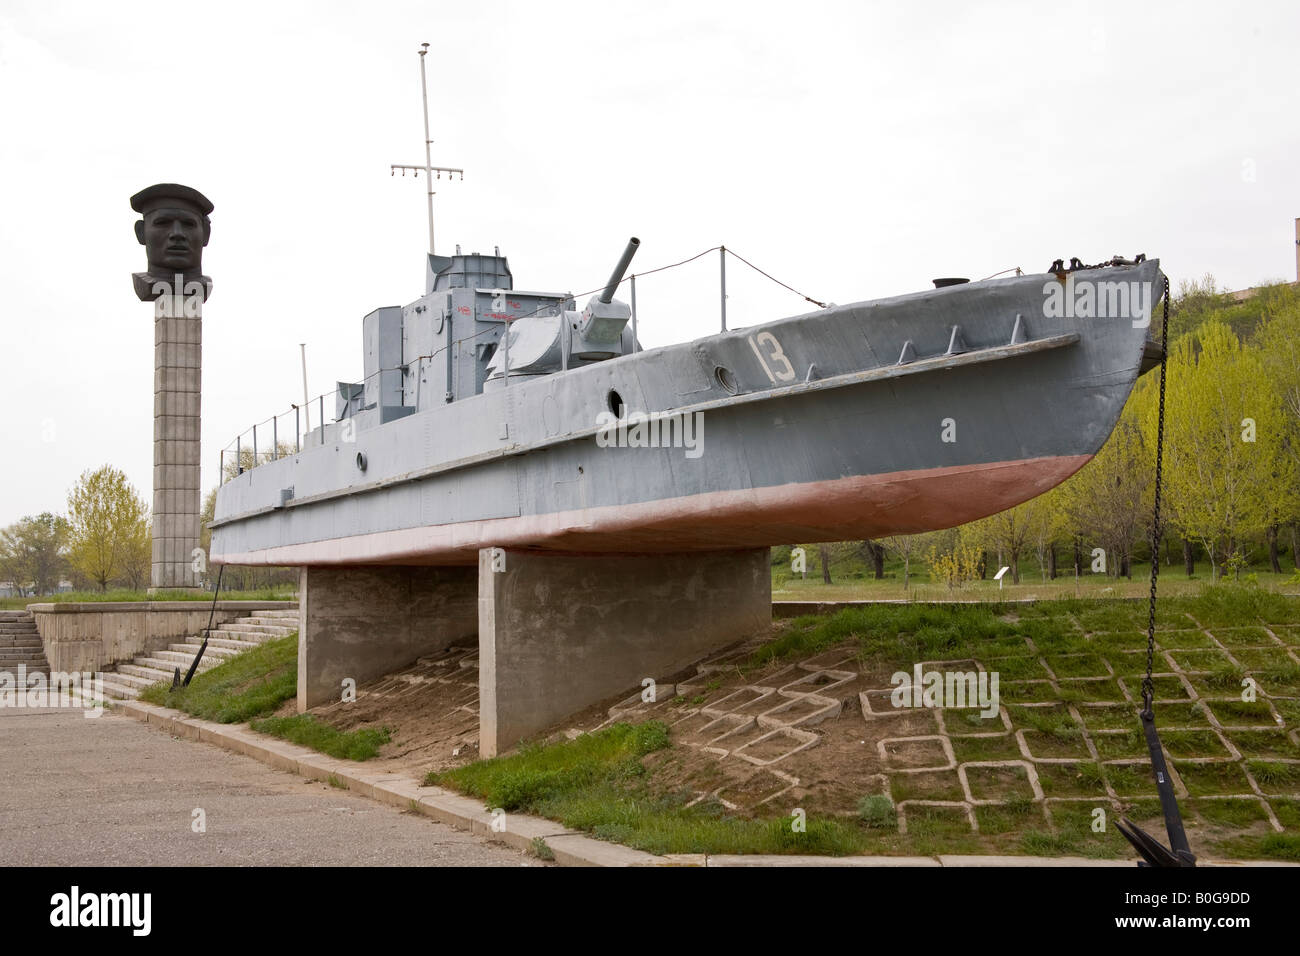 De la canonnière flottille navale Volga utilisé pendant la bataille de Stalingrad, Volgograd, Russie, Fédération de Russie Banque D'Images